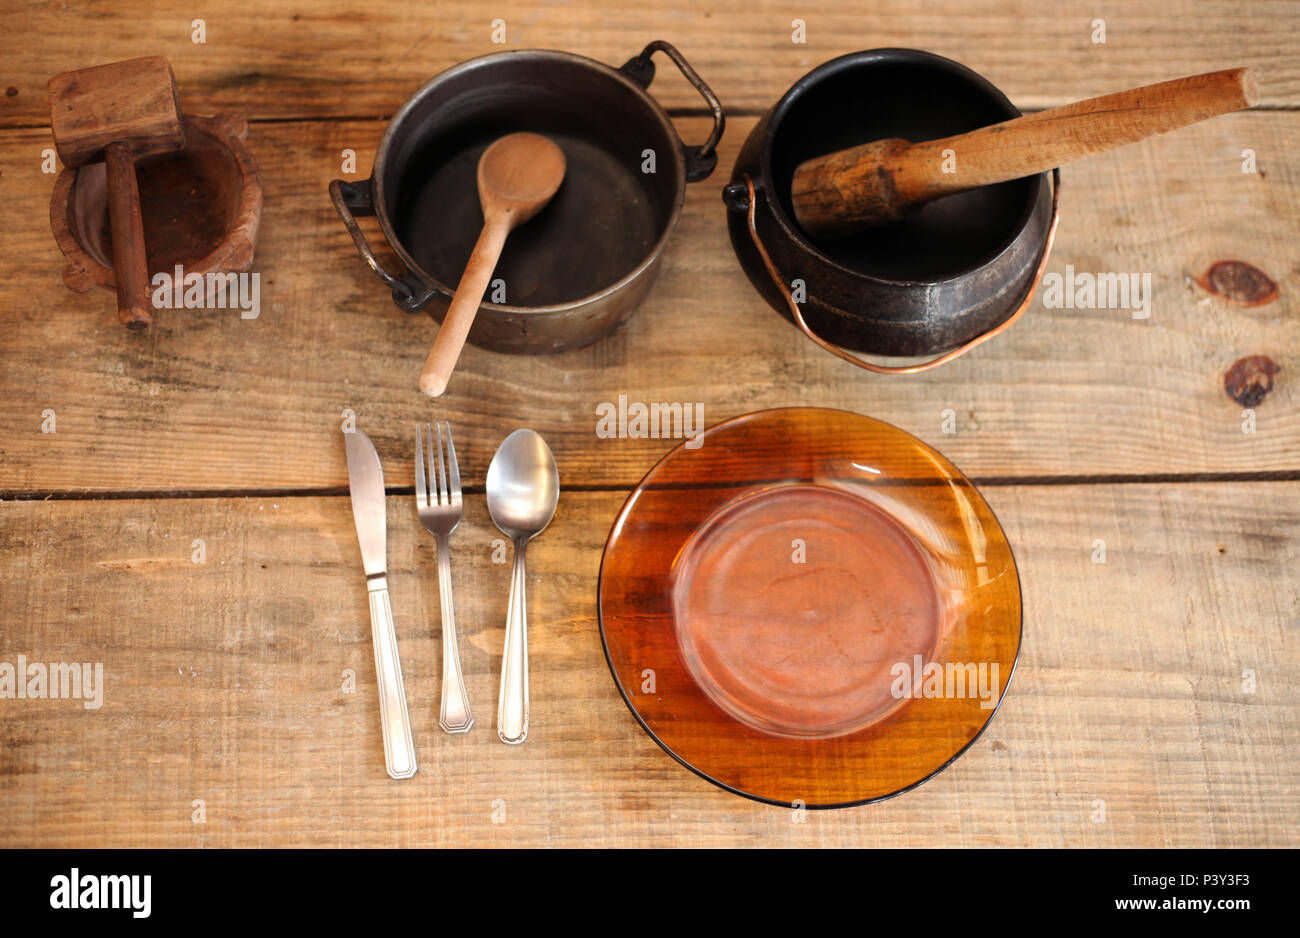 Panela de ferro com colher de madeira, panela de ferro, com amassador de  feijão em madeira, faca, garfo e colher em metal e prato de vidro escuro em  cima de mesa de